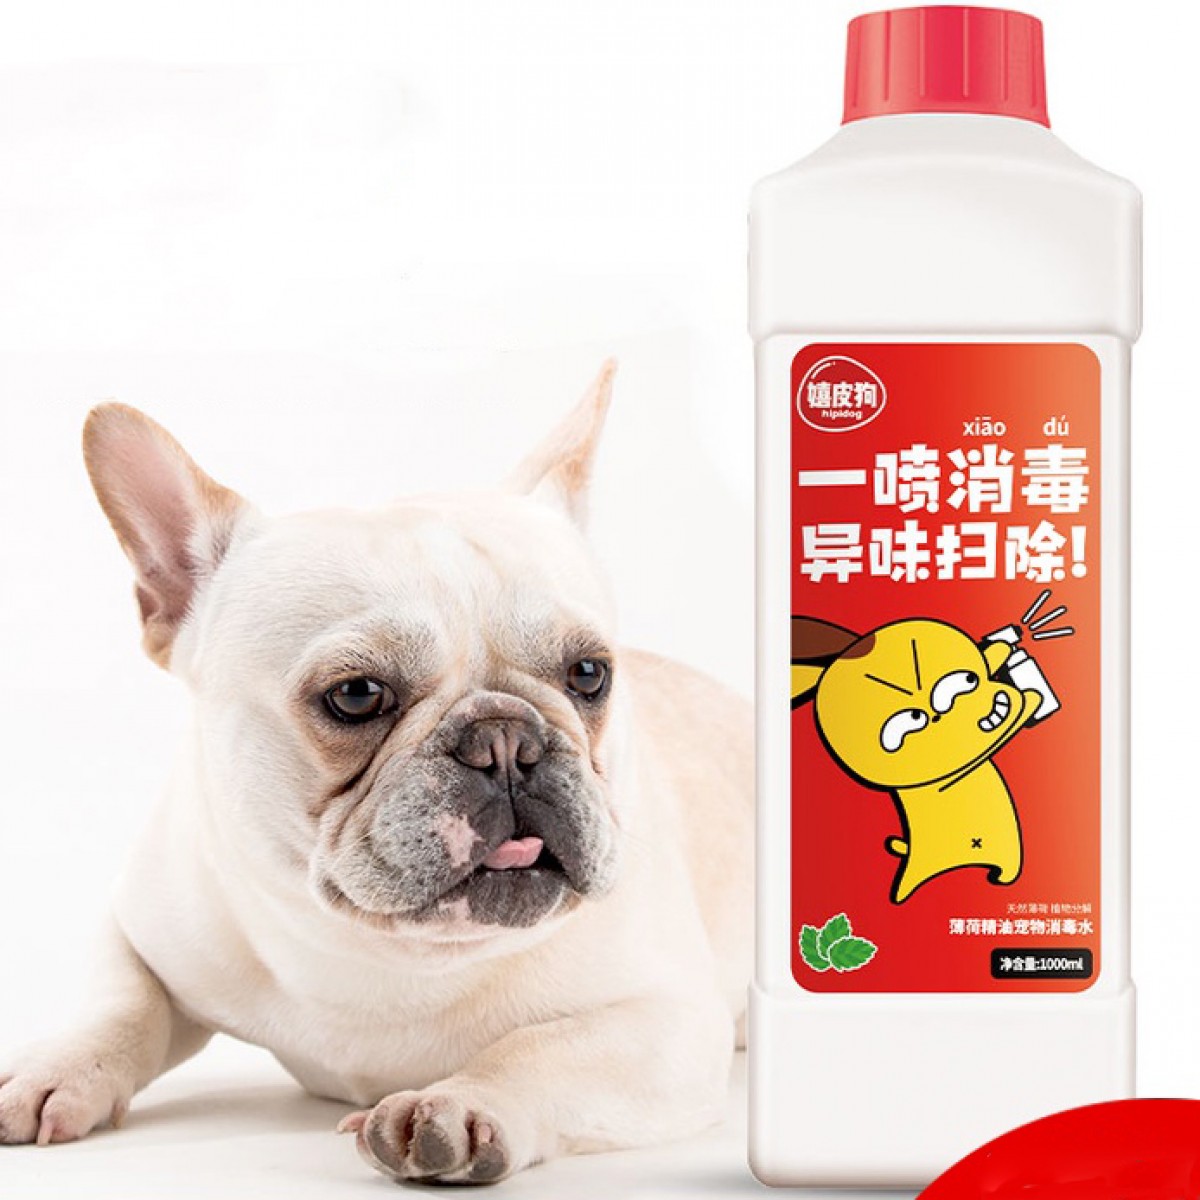 狗狗尿味專用除臭寵物消毒液